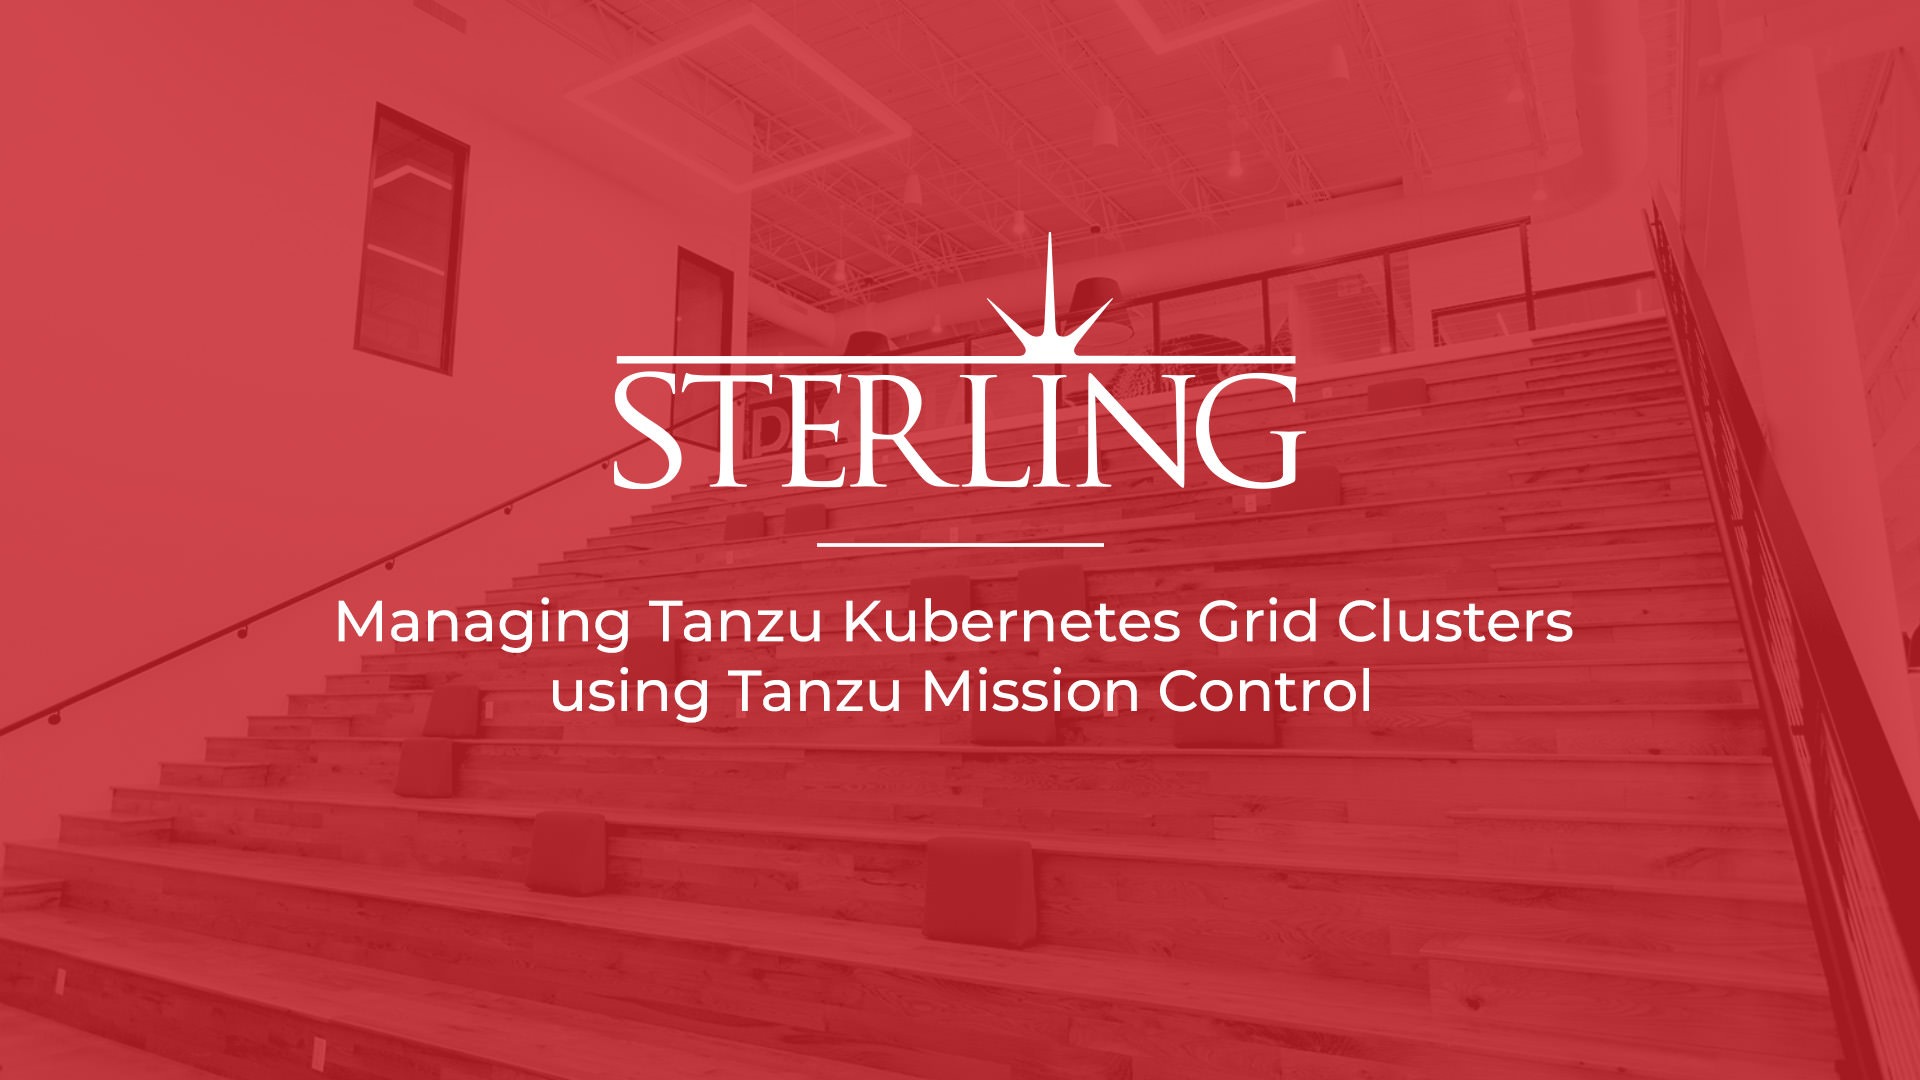 Managing Tanzu Kubernetes Grid Clusters using Tanzu Mission Control